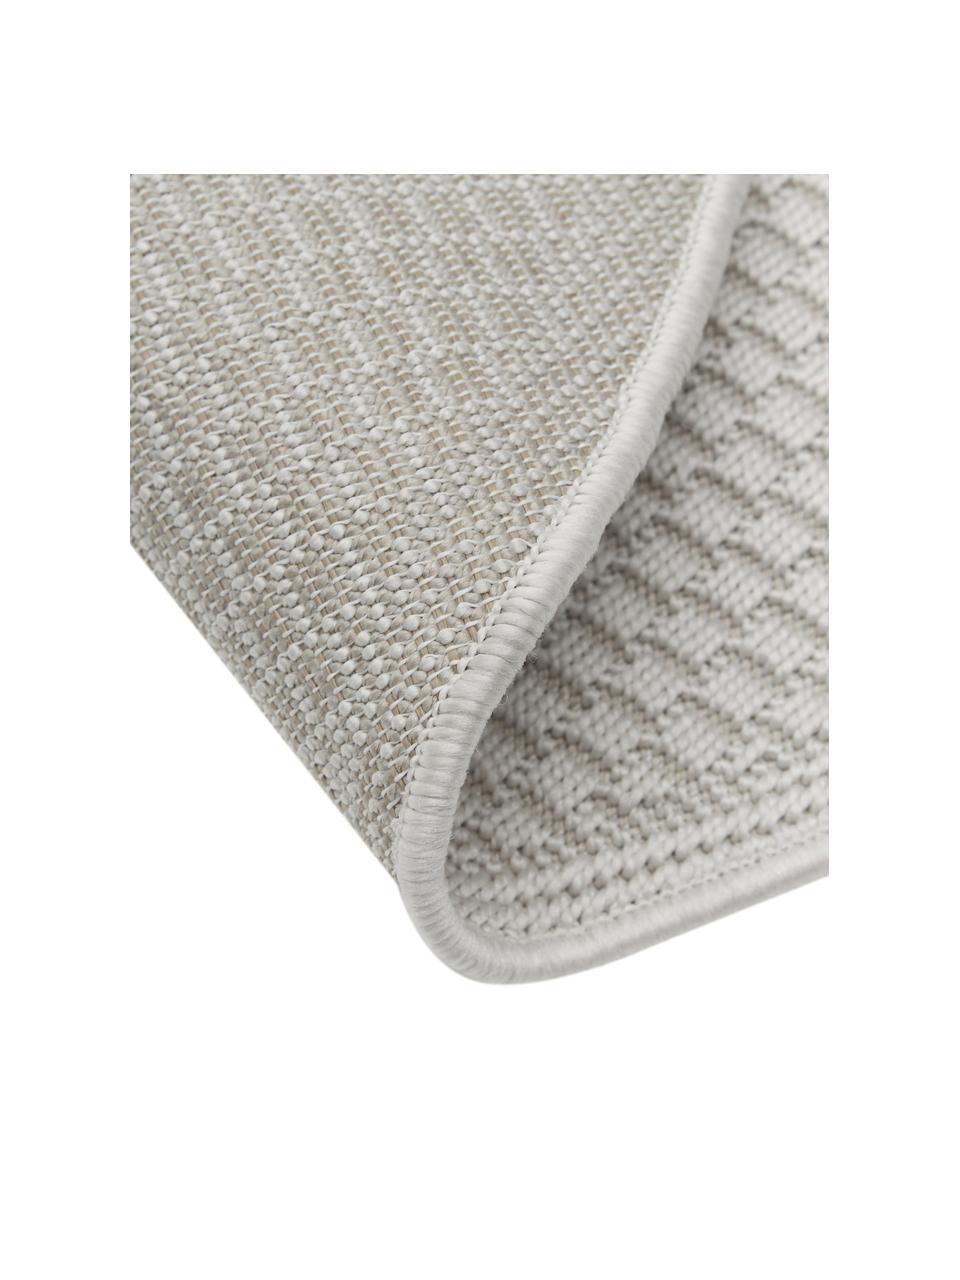 Tappeto ovale da interno-esterno color bianco crema Toronto, 100% polipropilene, Bianco crema, Ø 120 cm (taglia S)